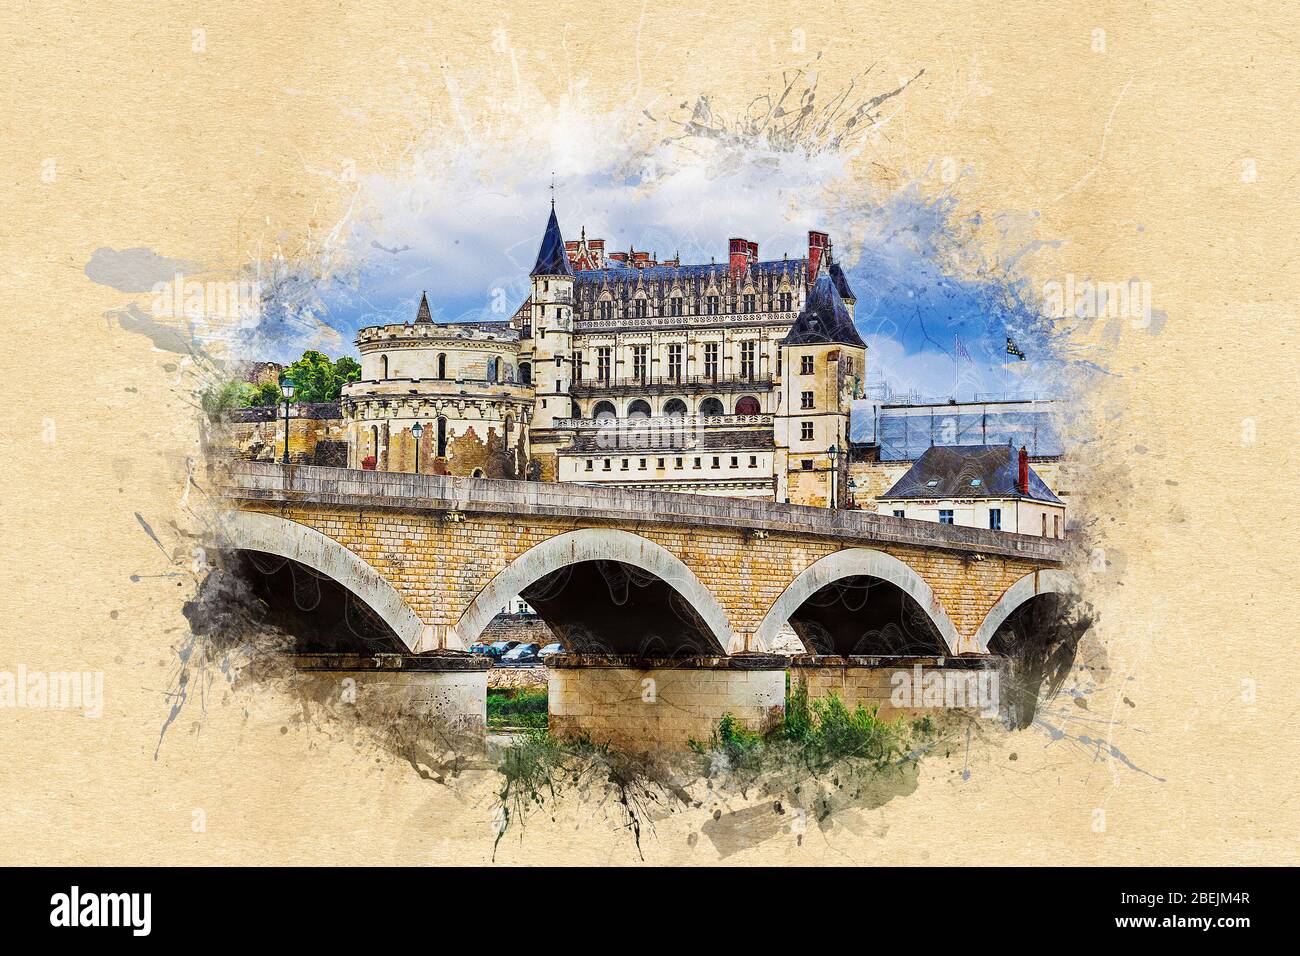 Château d'Amboise dans la vallée de la Loire, région de Touraine, France - série d'illustrations de style peint d'époque Banque D'Images